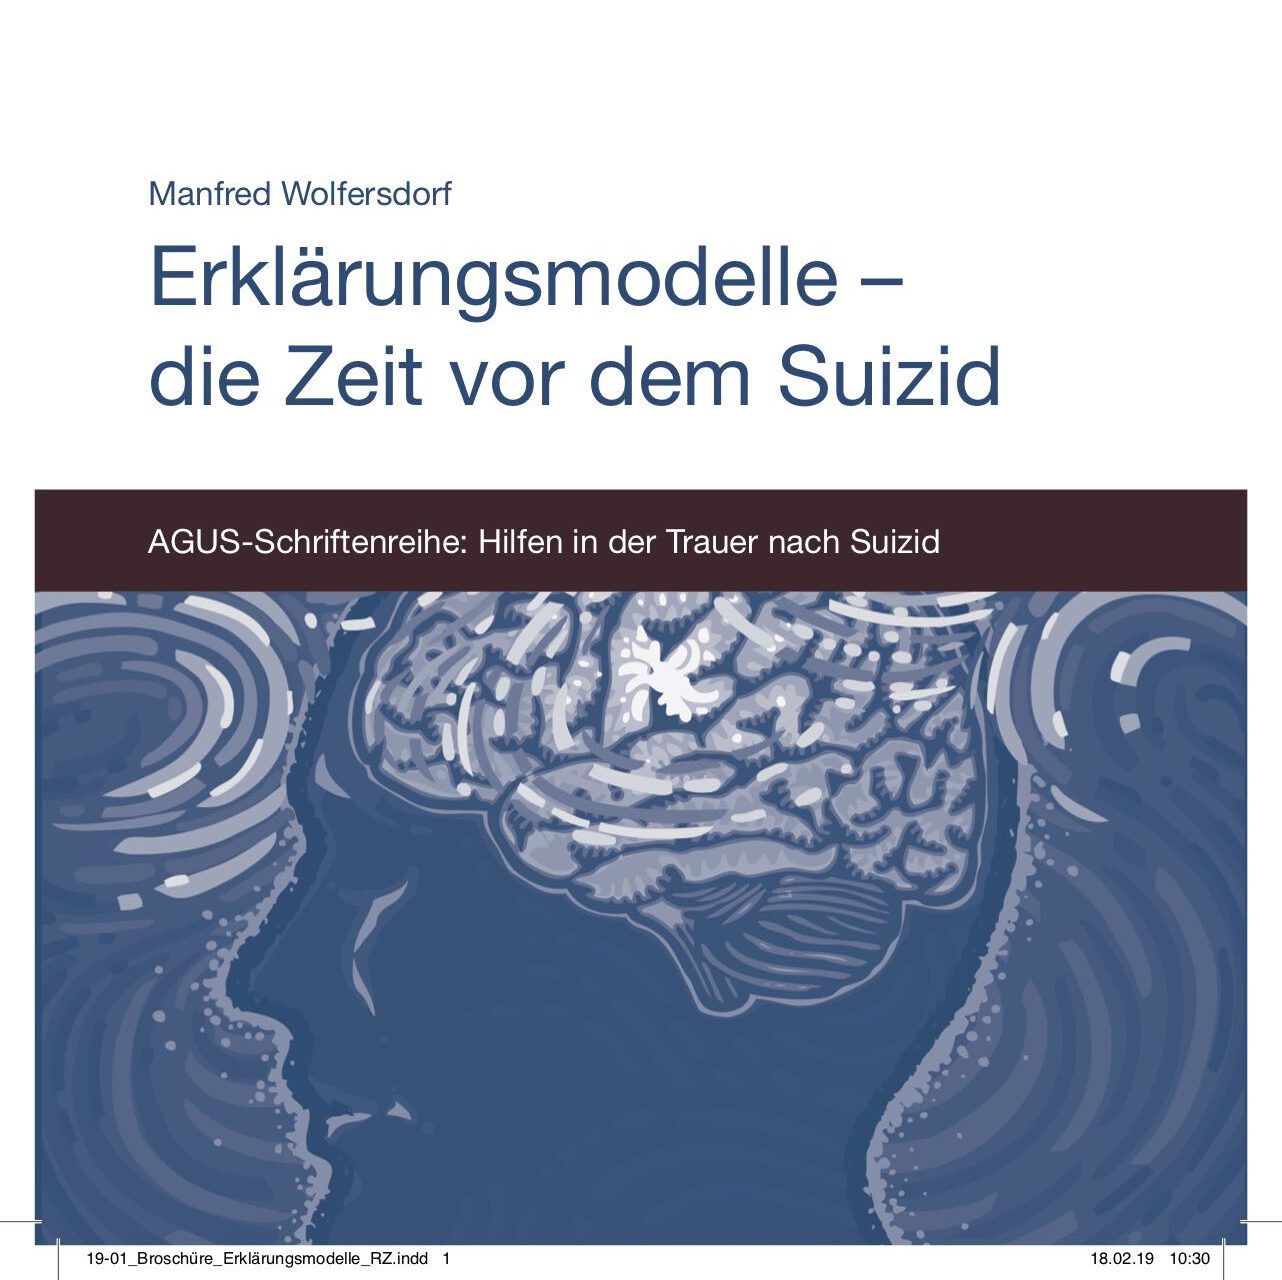 Foto von Titelseite Broschüre "Erklärungsmodelle - die Zeit vor dem Suizid"